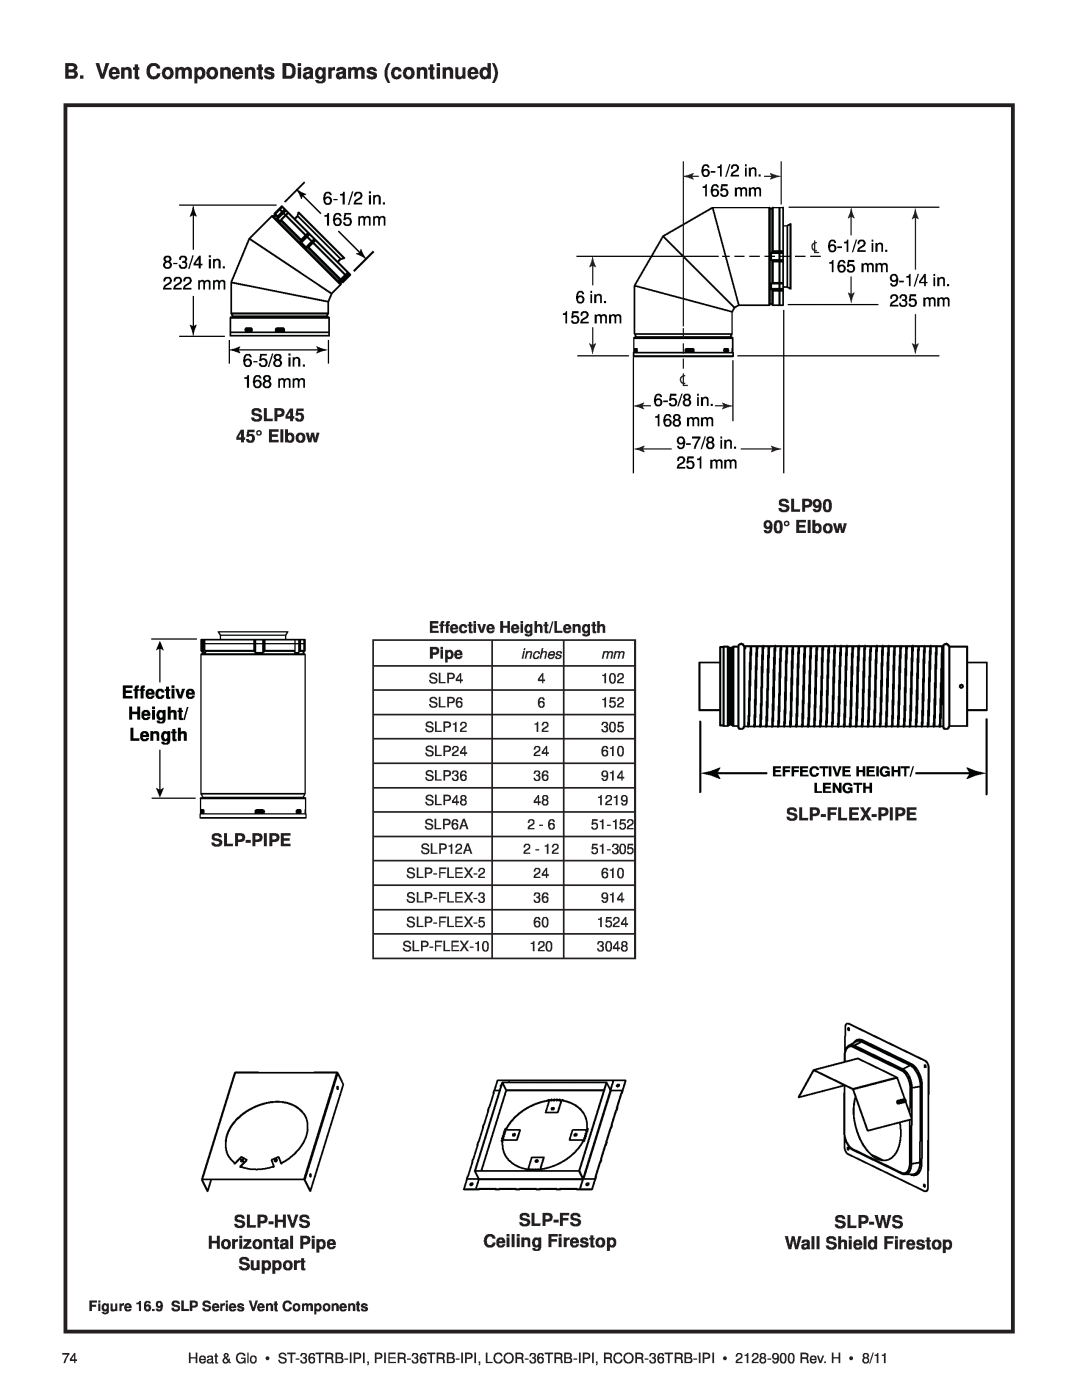 Heat & Glo LifeStyle ST-36TRB-IPI B. Vent Components Diagrams continued, SLP45, SLP90 90 Elbow, Slp-Pipe, Slp-Hvs 